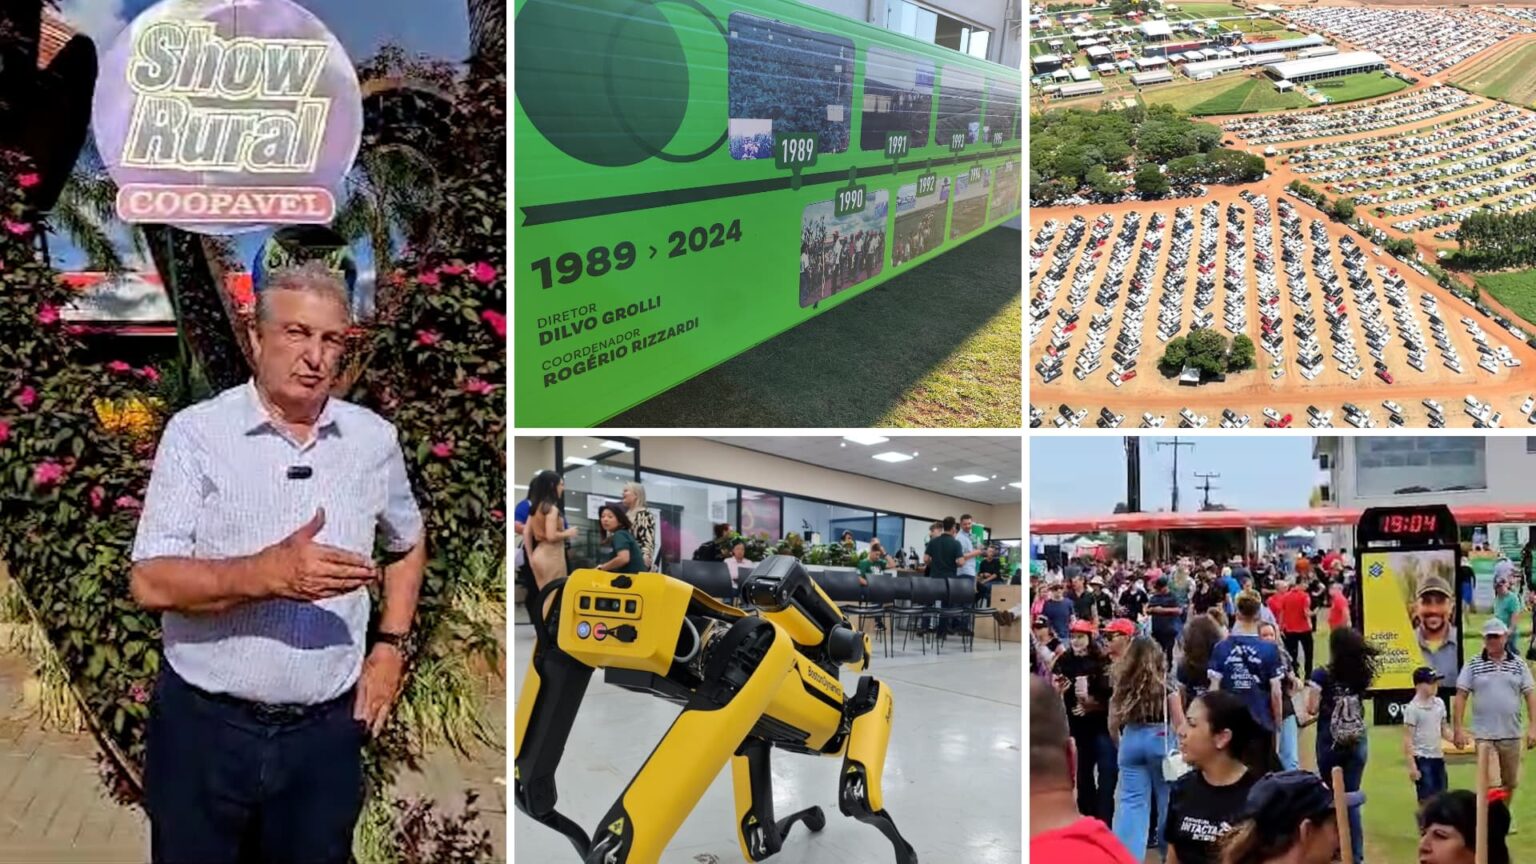 Com mais de R$ 6 bilhões em negócios, Show Rural Coopavel 2024 encerra com recorde histórico